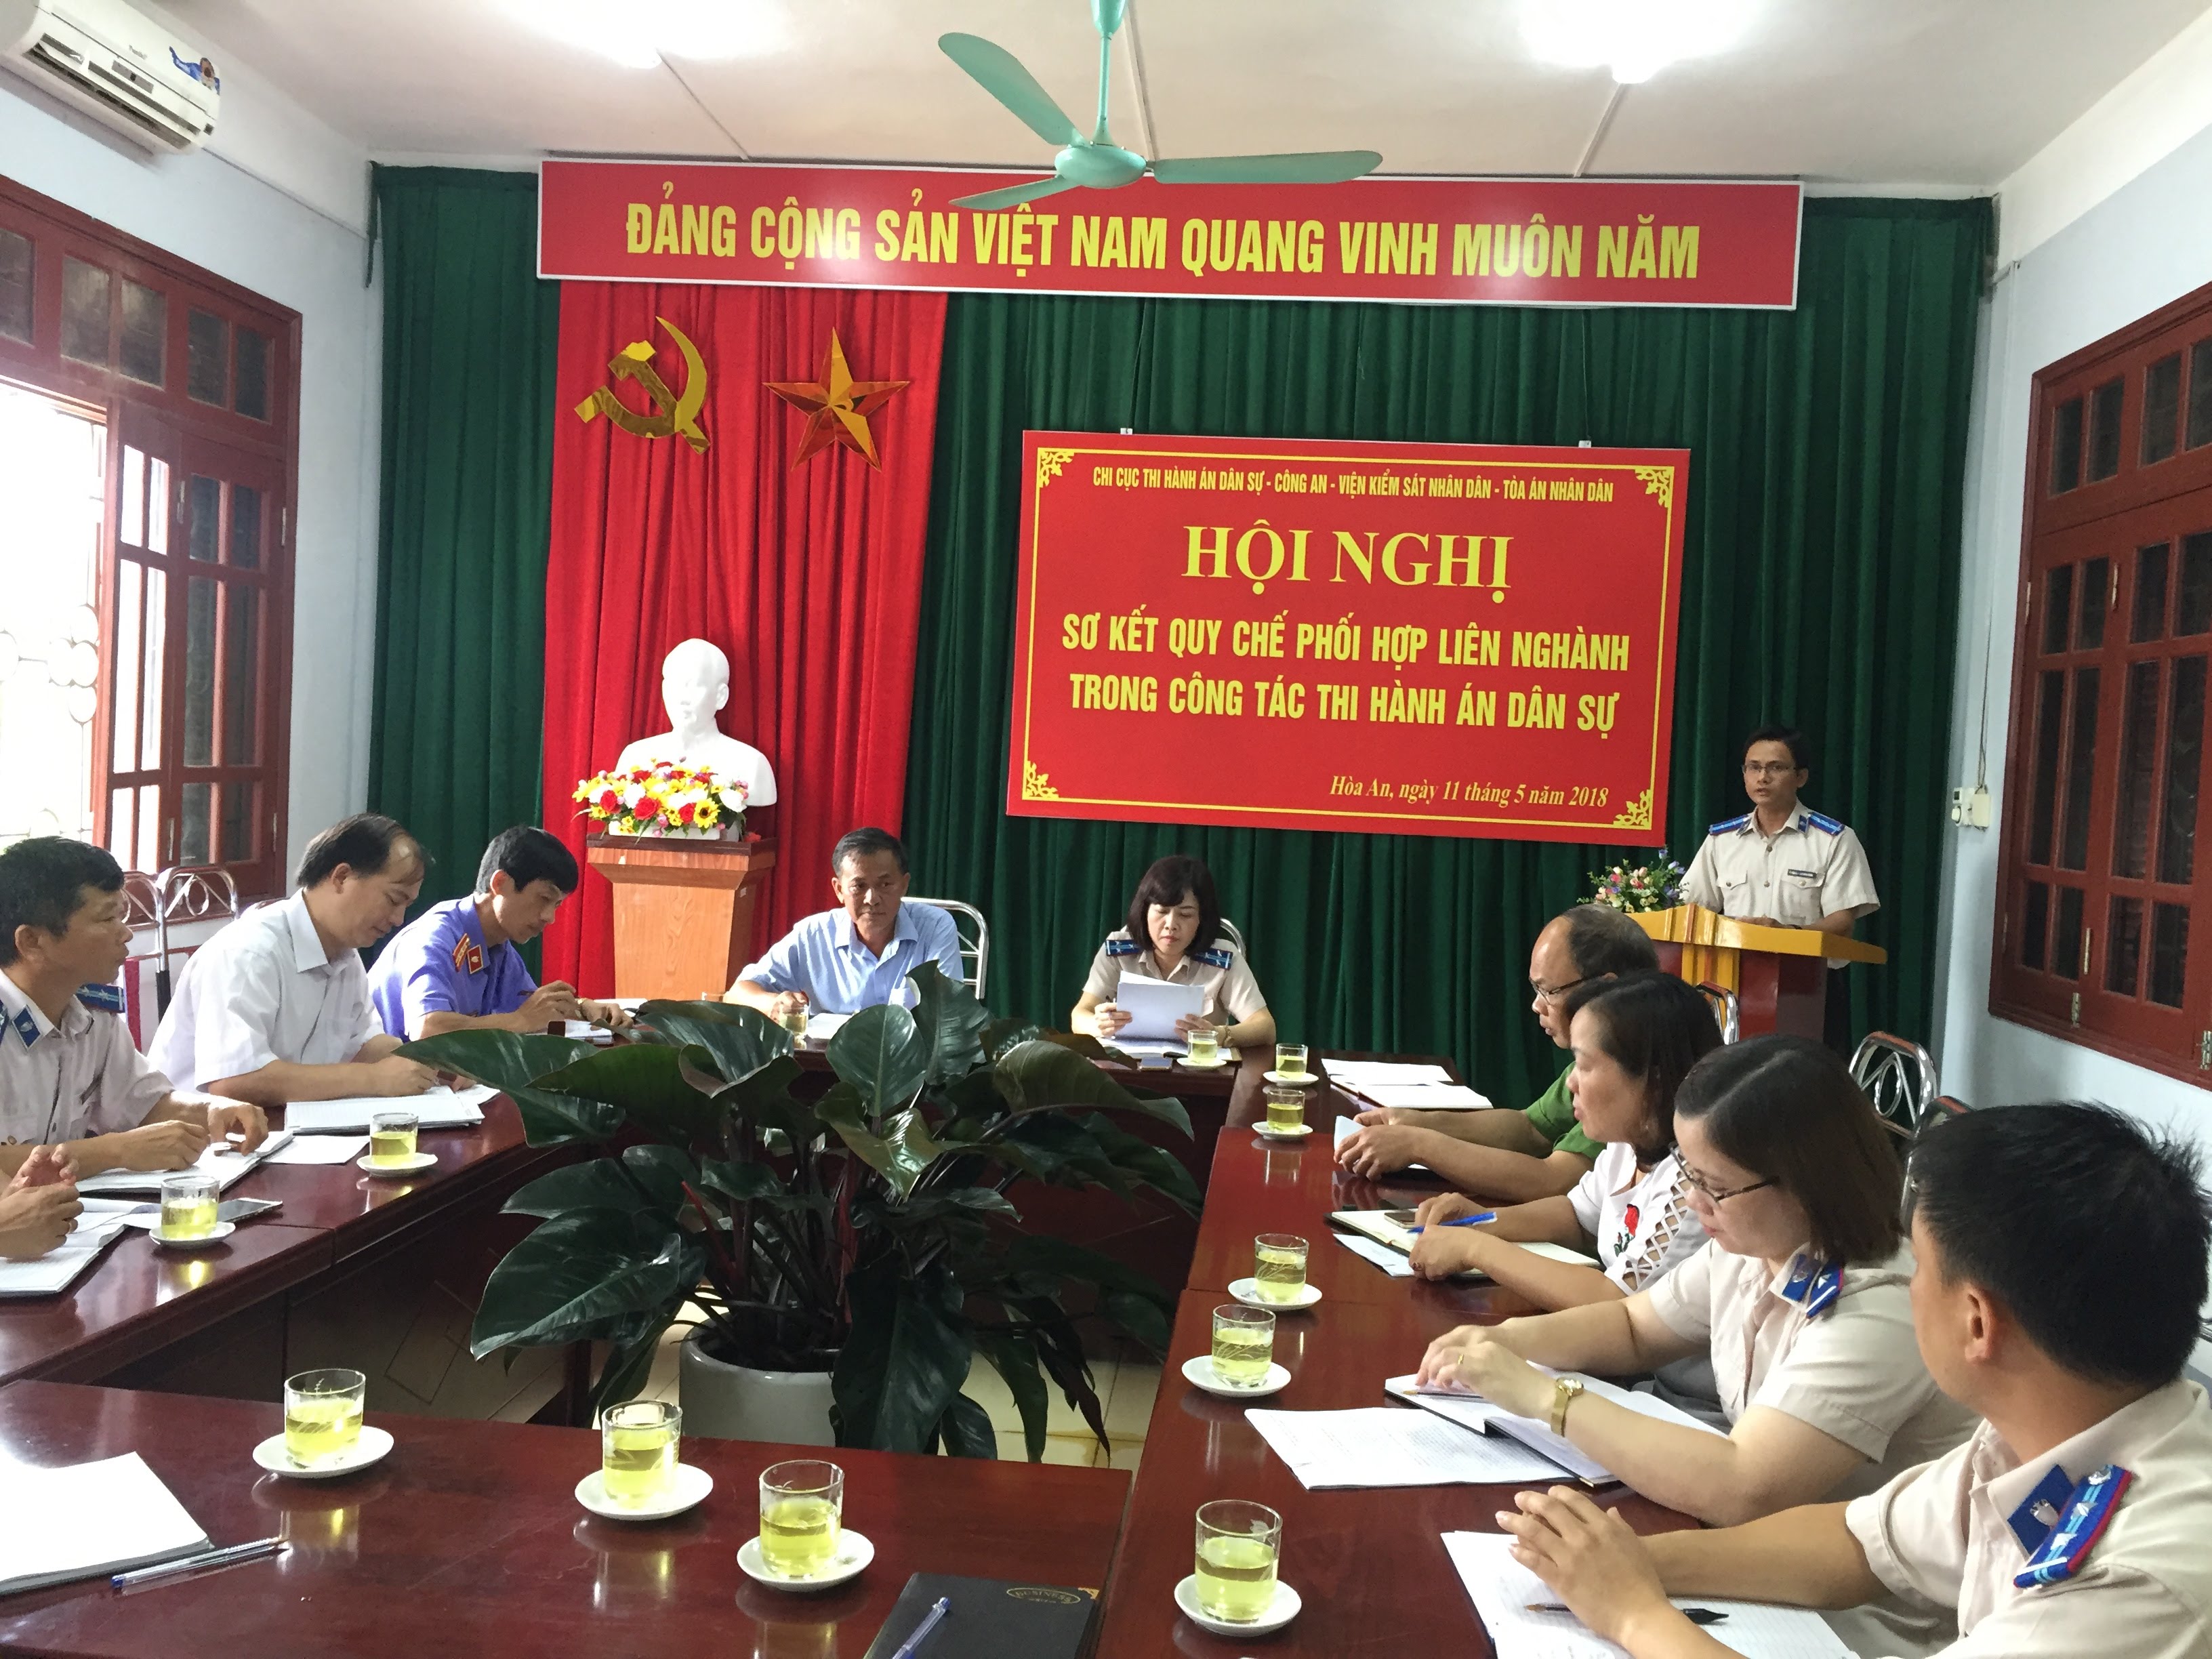 Chi cục Thi hành án dân sự huyện Hòa An tổ chức Hội nghị sơ kết Quy chế phối hợp liên ngành trong công tác thi hành án dân sự